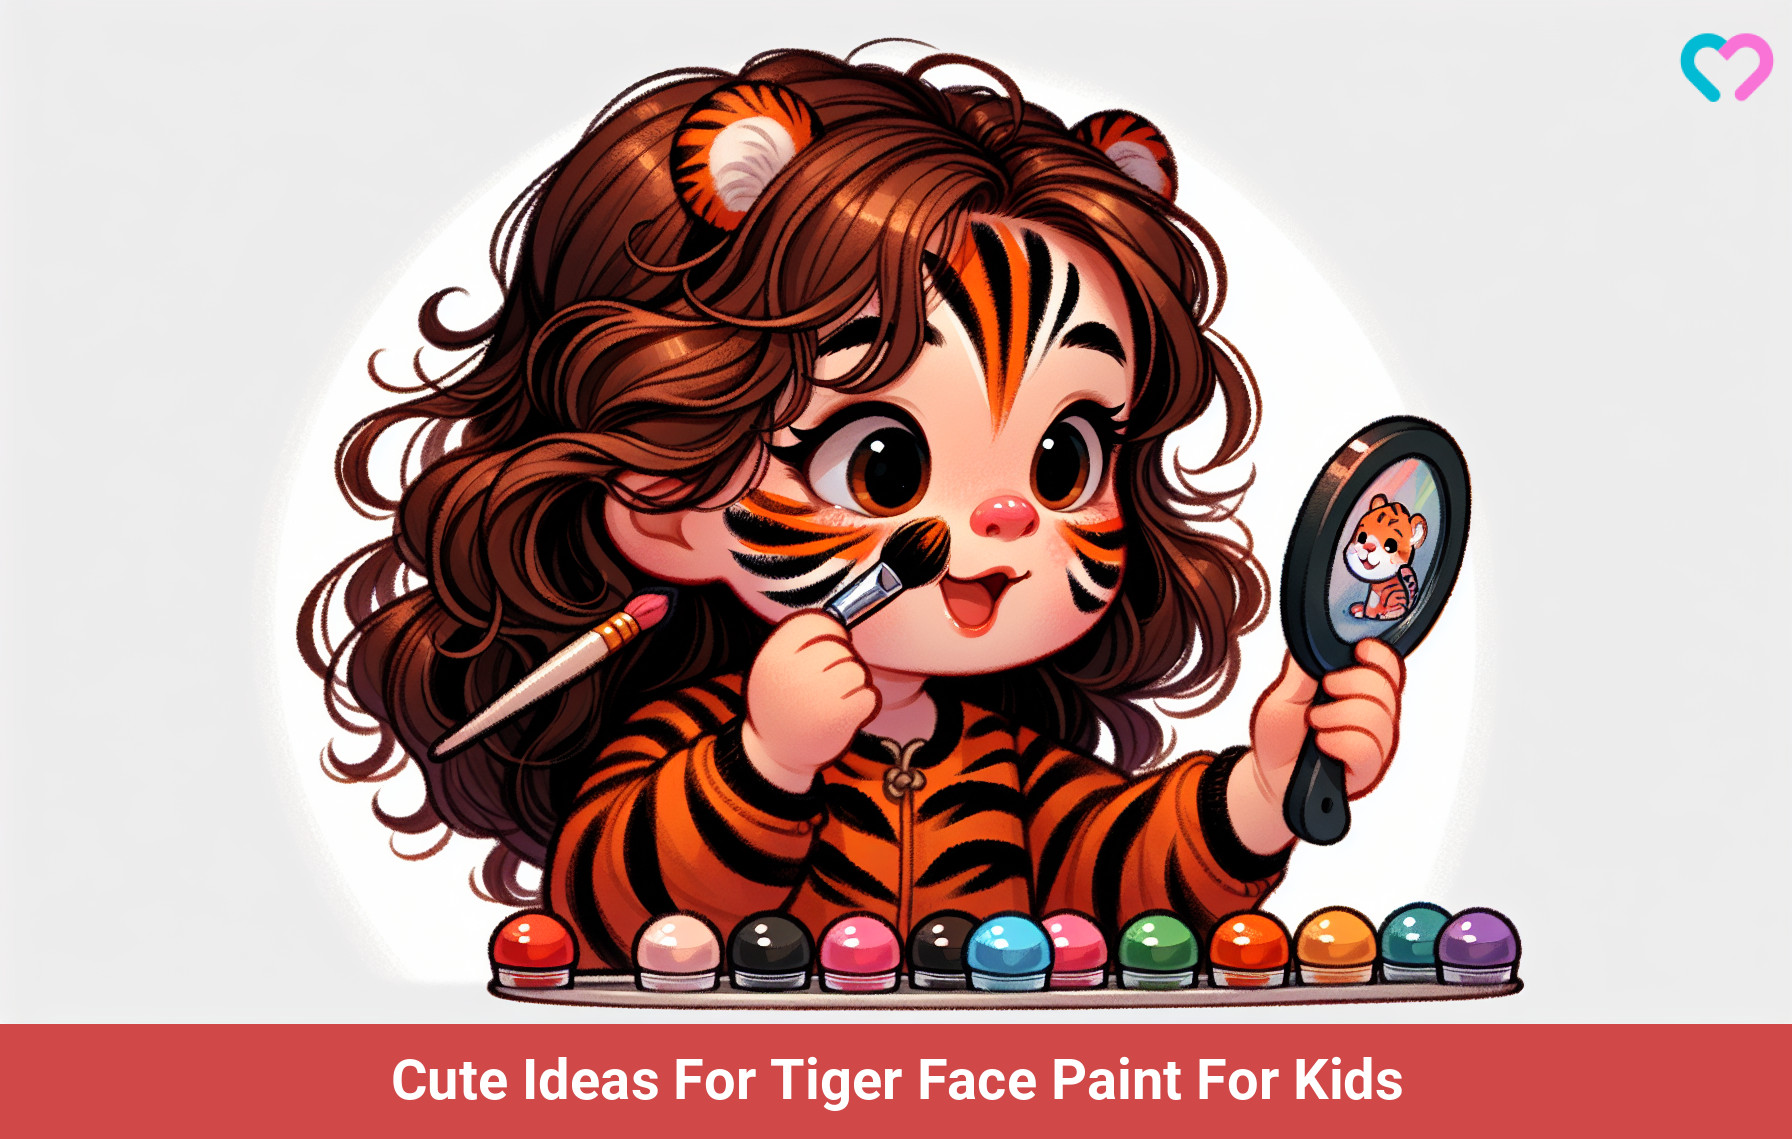 Tiger Face Paints For Kids_illustration